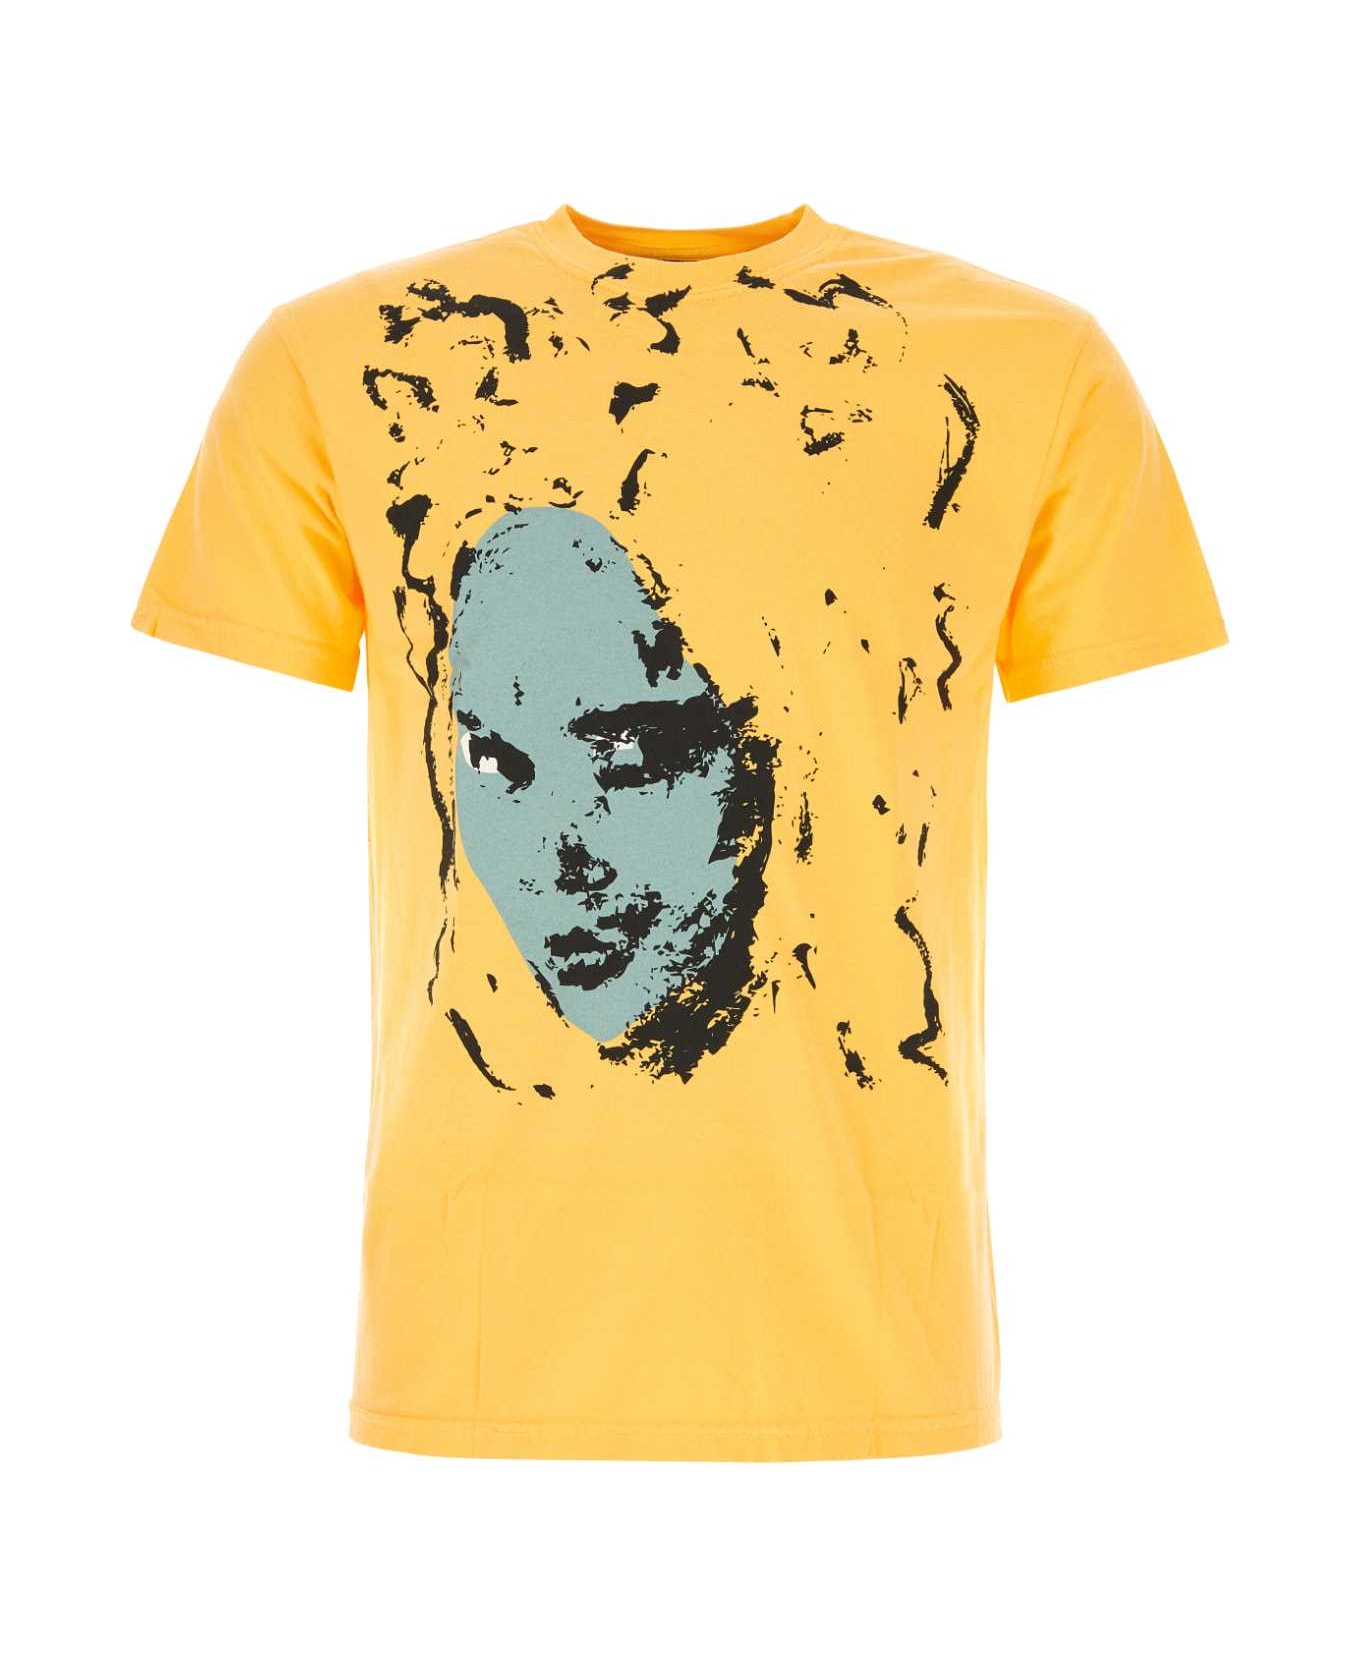 Kidsuper Yellow Cotton T-shirt - THECONARTISTORANGE